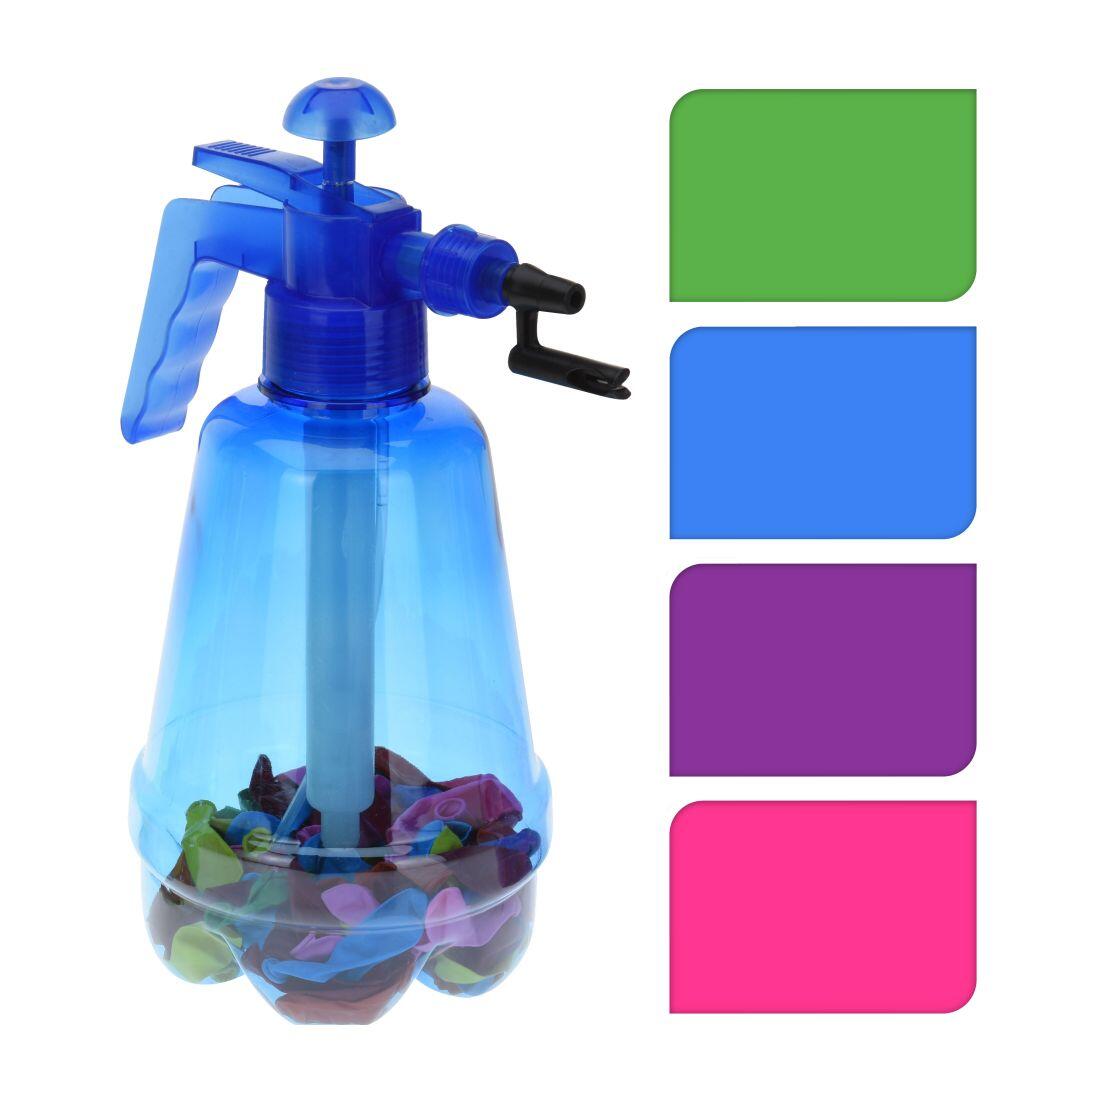 pumpička na vodní bomby 1,7l + balonky (100ks) mix barev 0.2 Kg MAXMIX Sklad14 385997 74